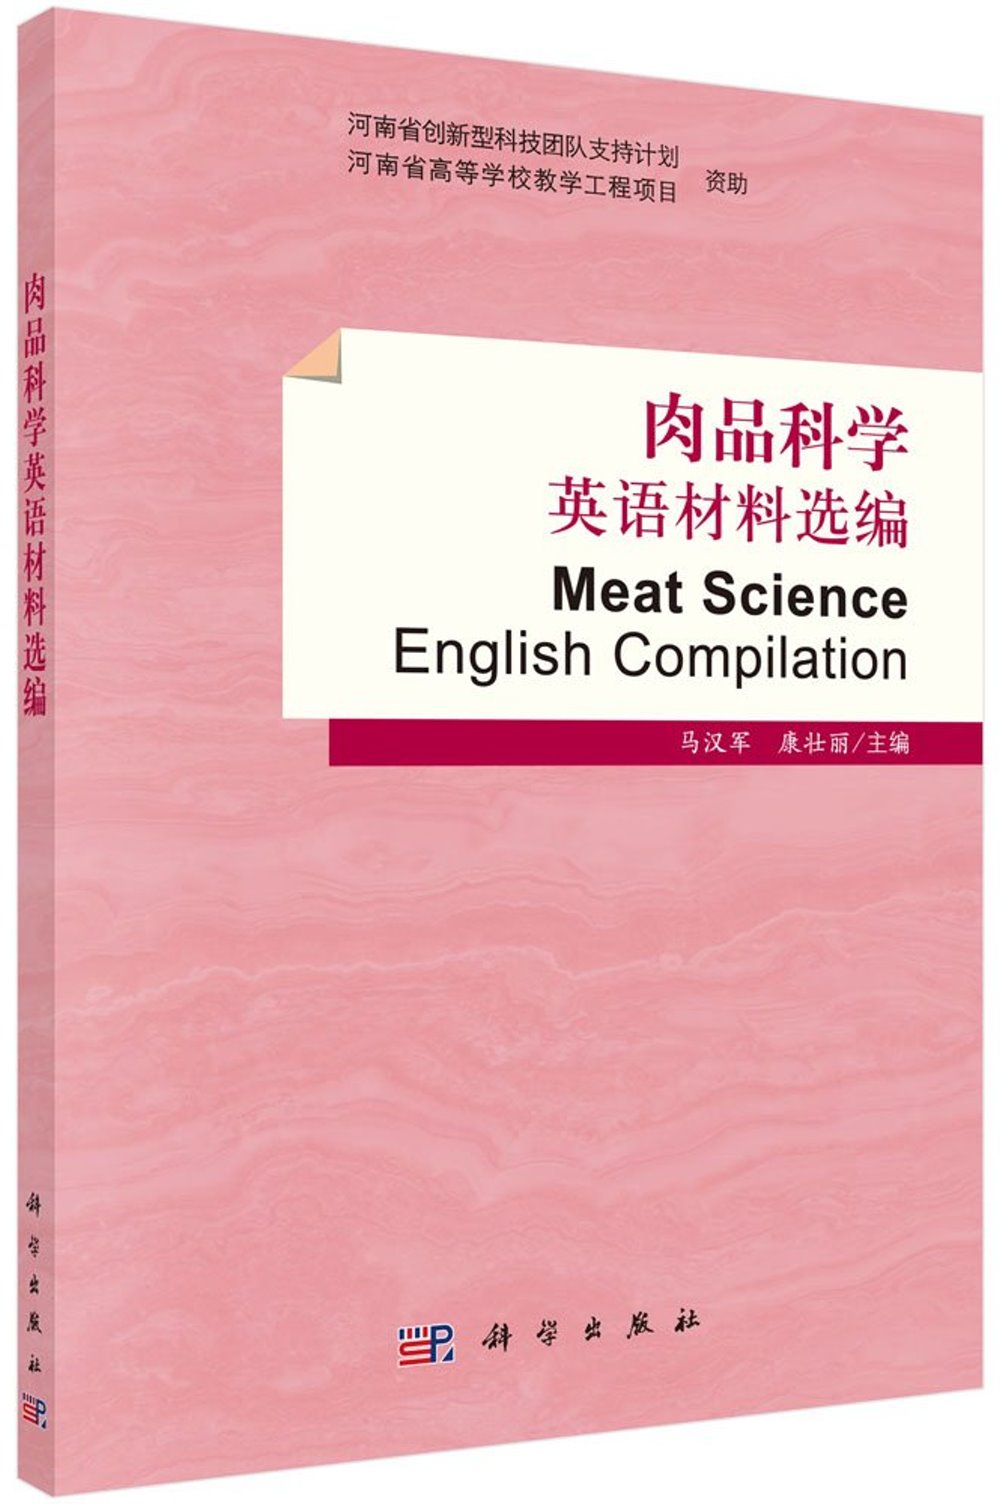 肉品科學英語材料選編（英文）